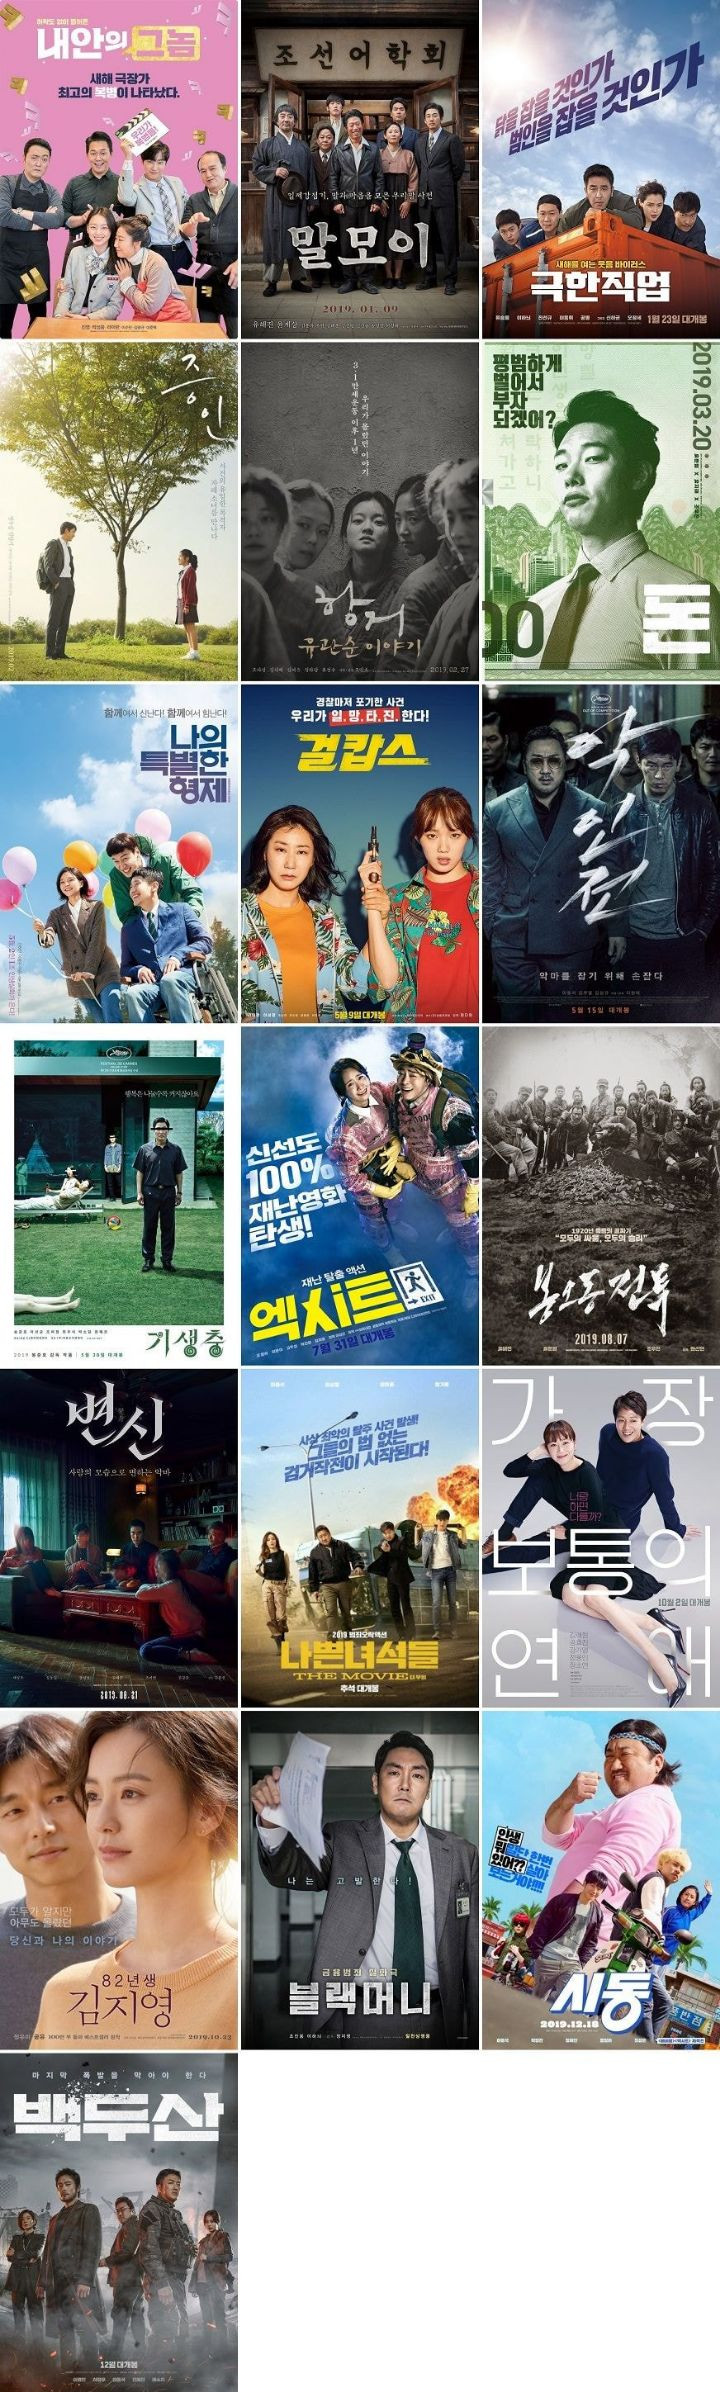 지금 한국 영화계가 ㅈㄴ 징징거리는 이유